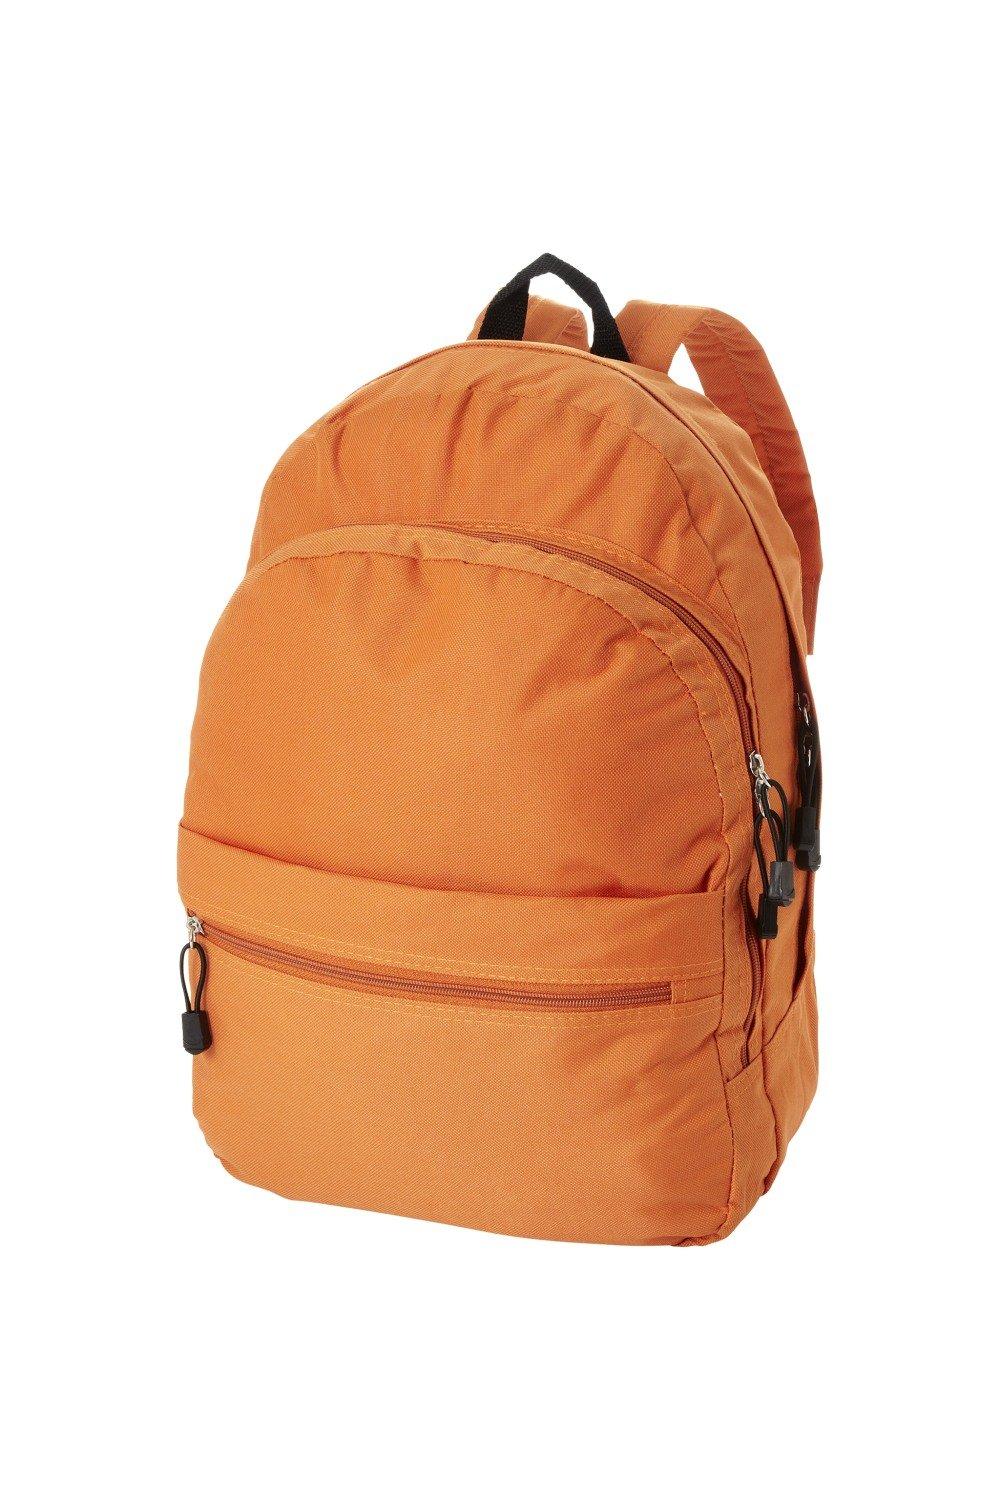 Трендовый рюкзак Bullet, оранжевый универсальный сетчатый рюкзак унисекс с передним карманом оранжевый камуфляж